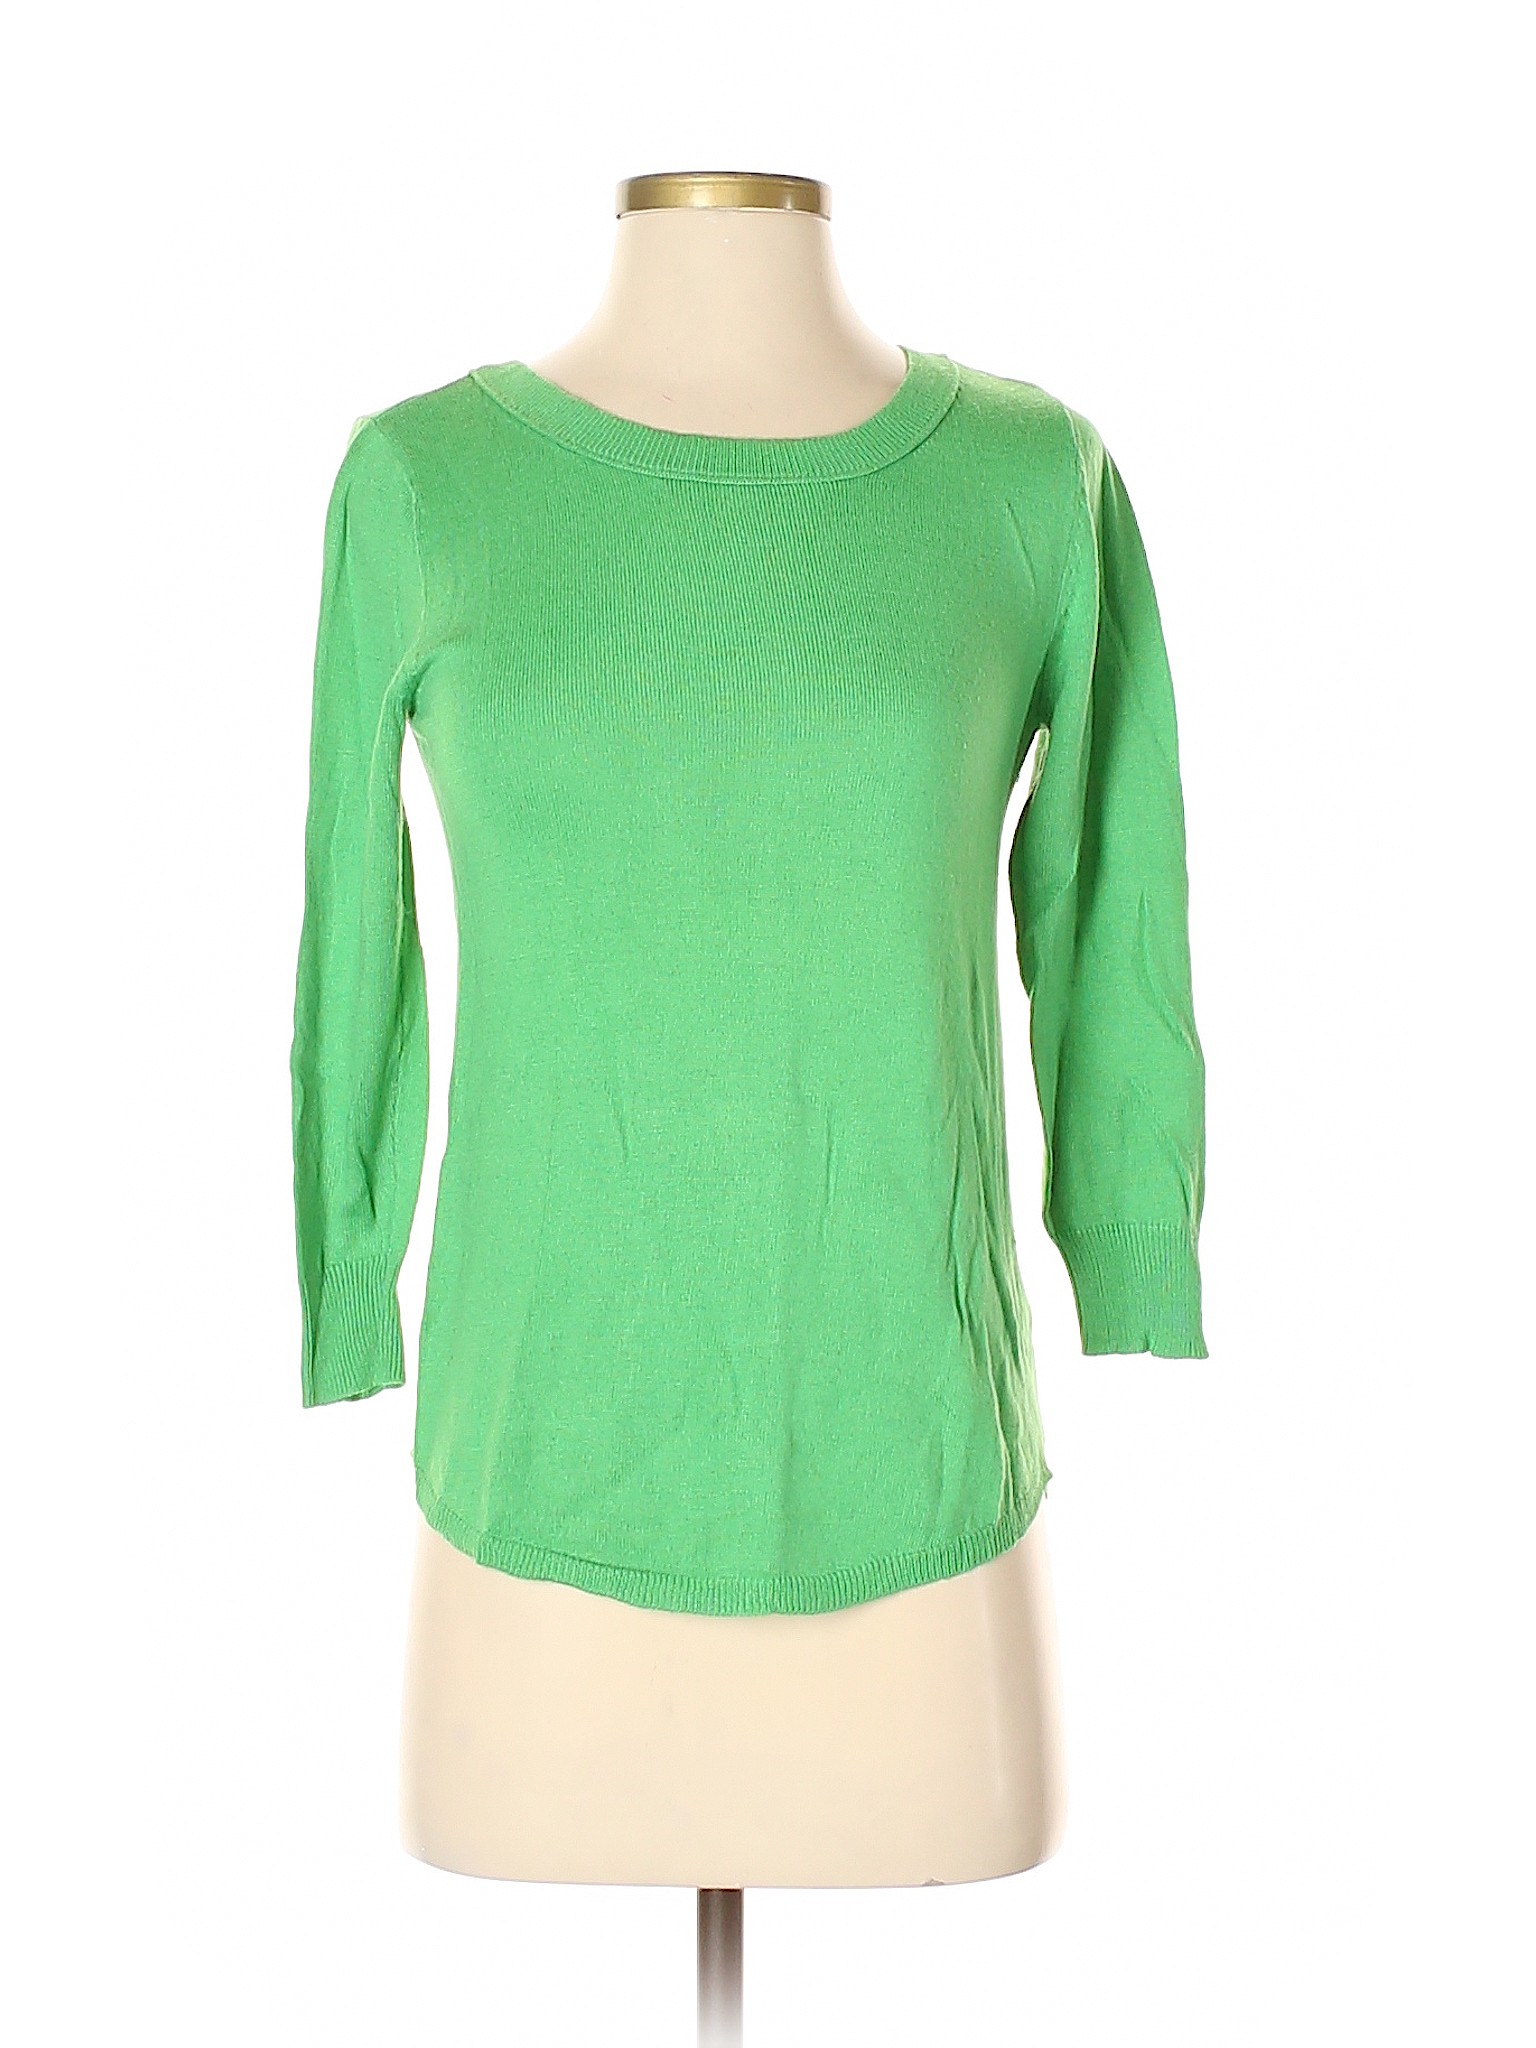 Forever 21 Women Green Pullover Sweater S | eBay